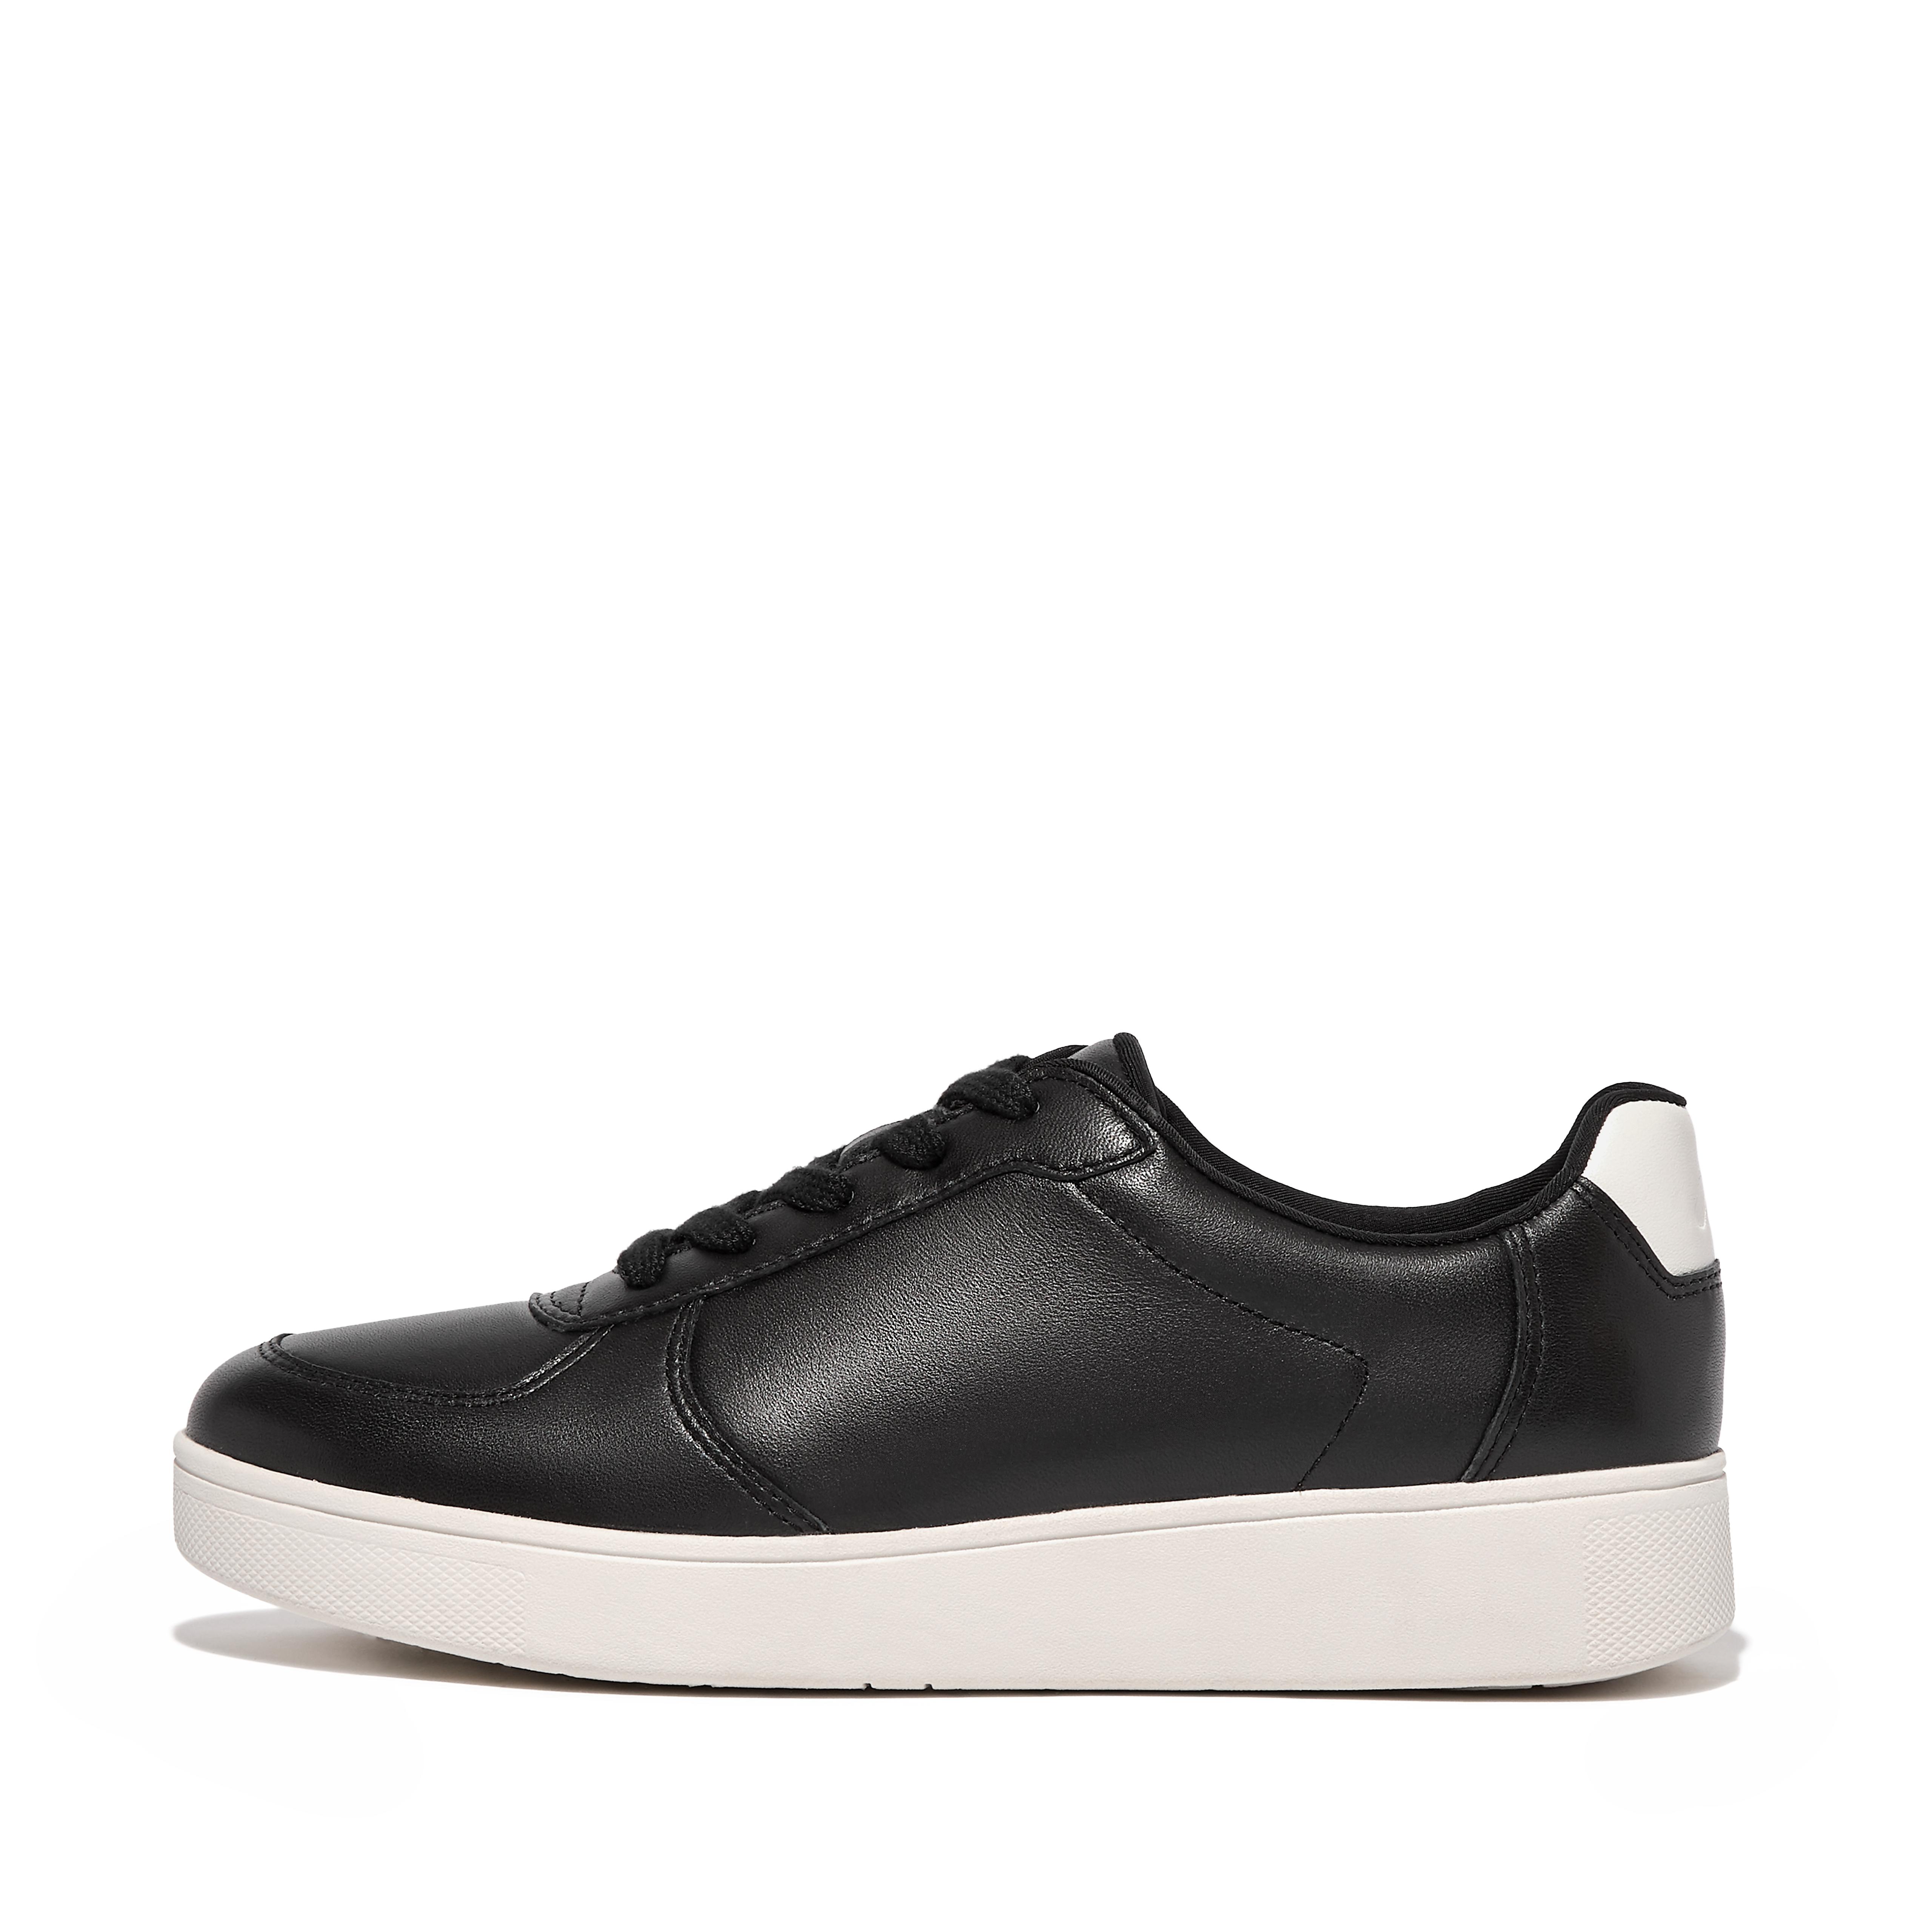 핏플랍 스니커즈 Fitflop Leather Panel Sneakers,Black